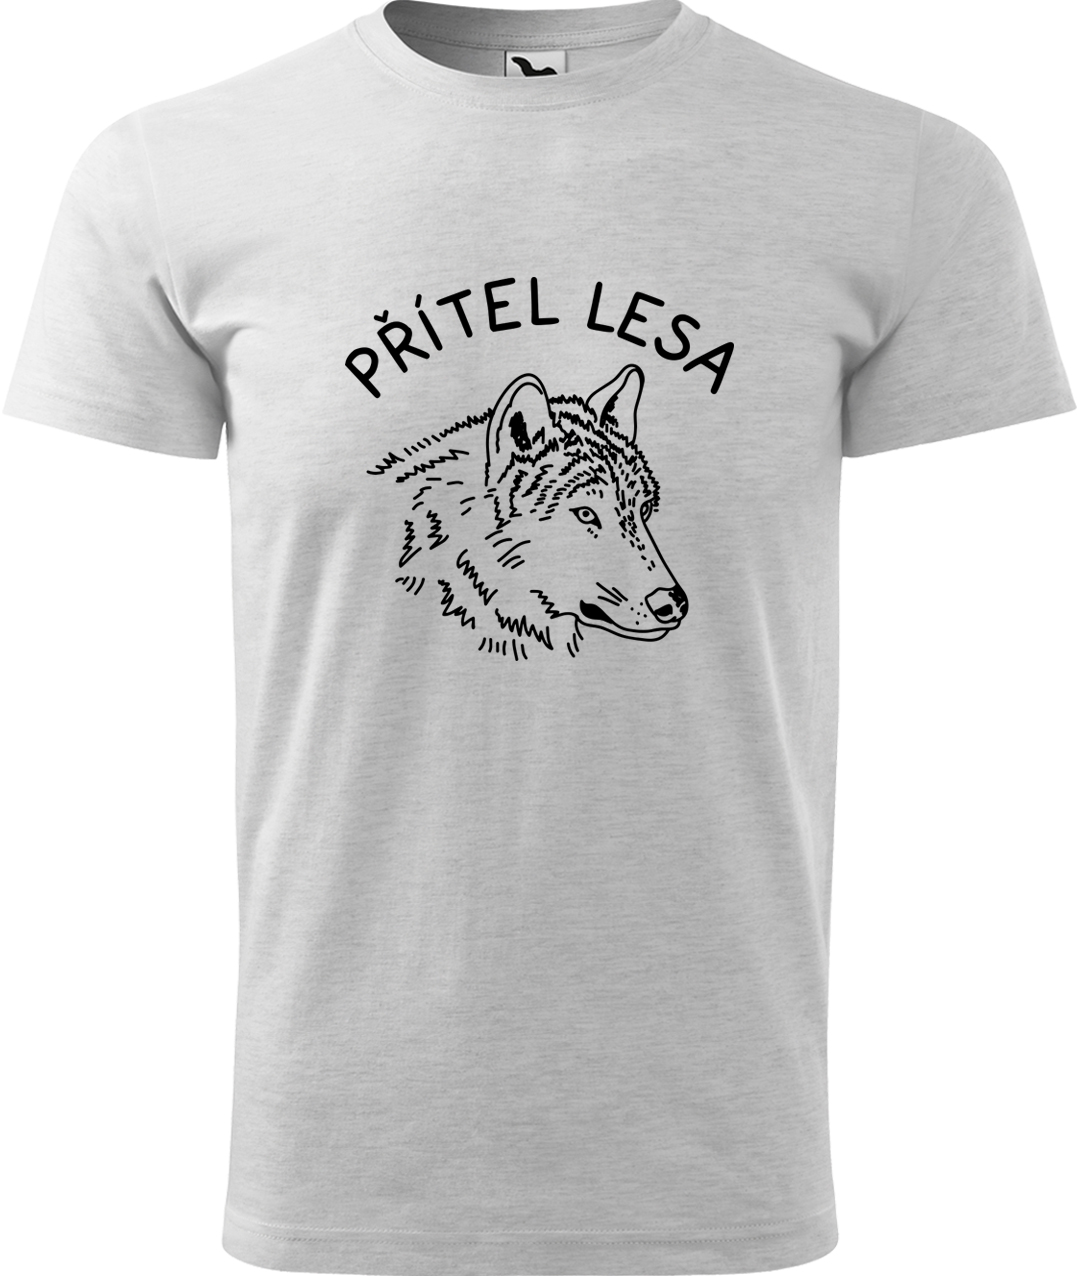 Pánské tričko s vlkem - Přítel lesa Velikost: 3XL, Barva: Světle šedý melír (03), Střih: pánský